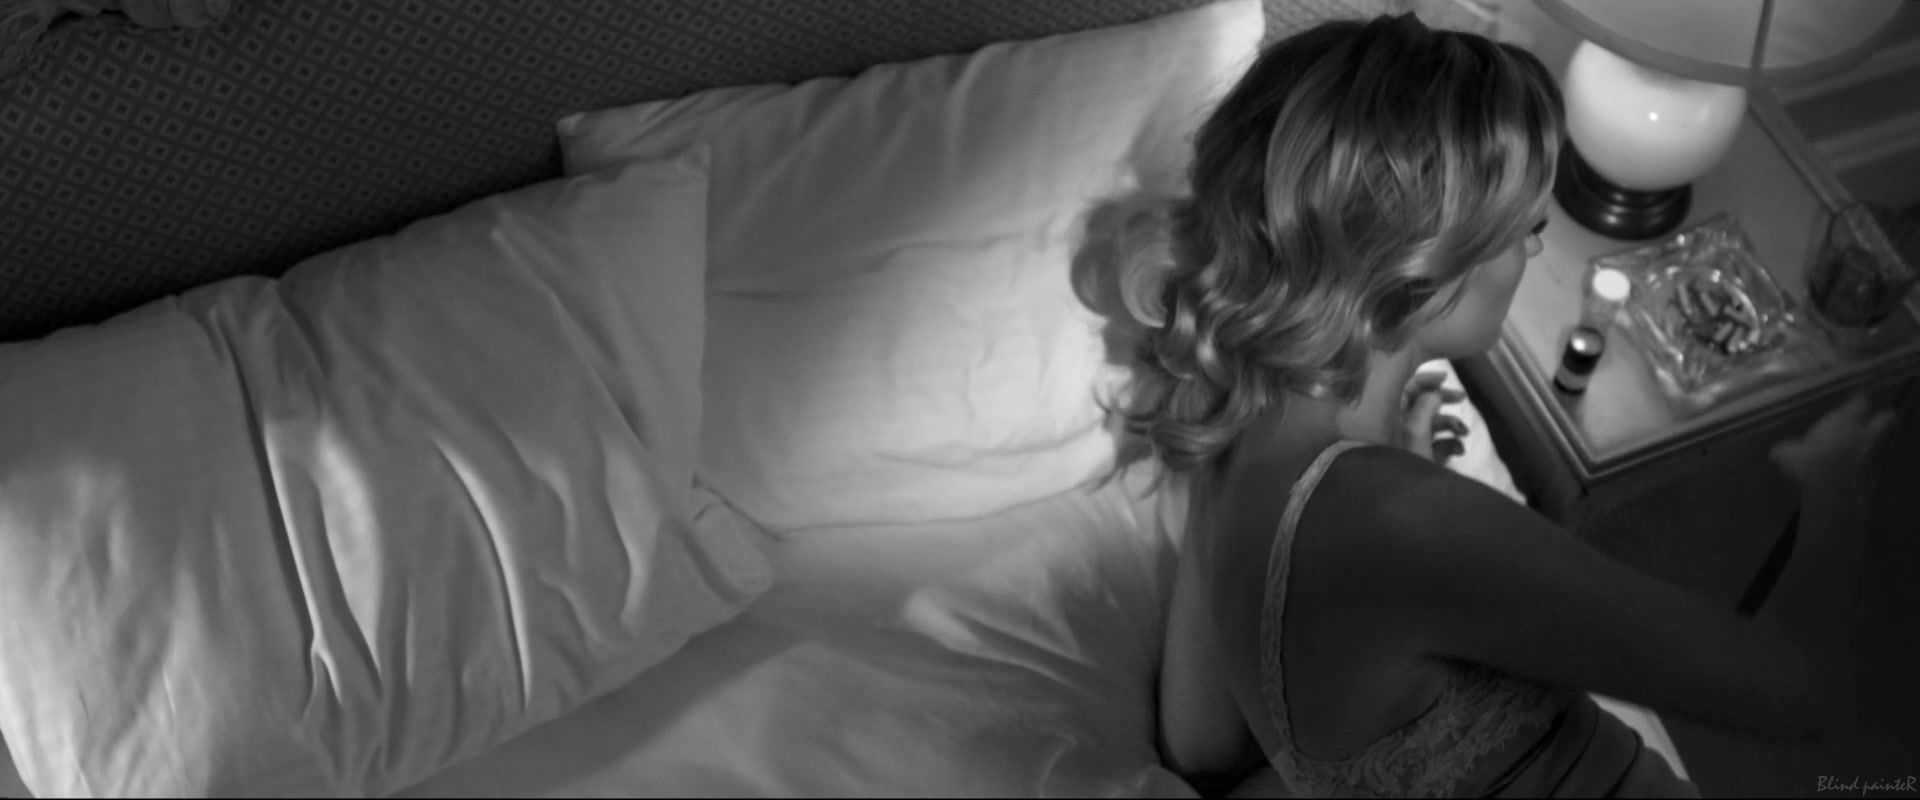 Pornuj Malin Akerman nude - Hotel Noir (2012) Boobies